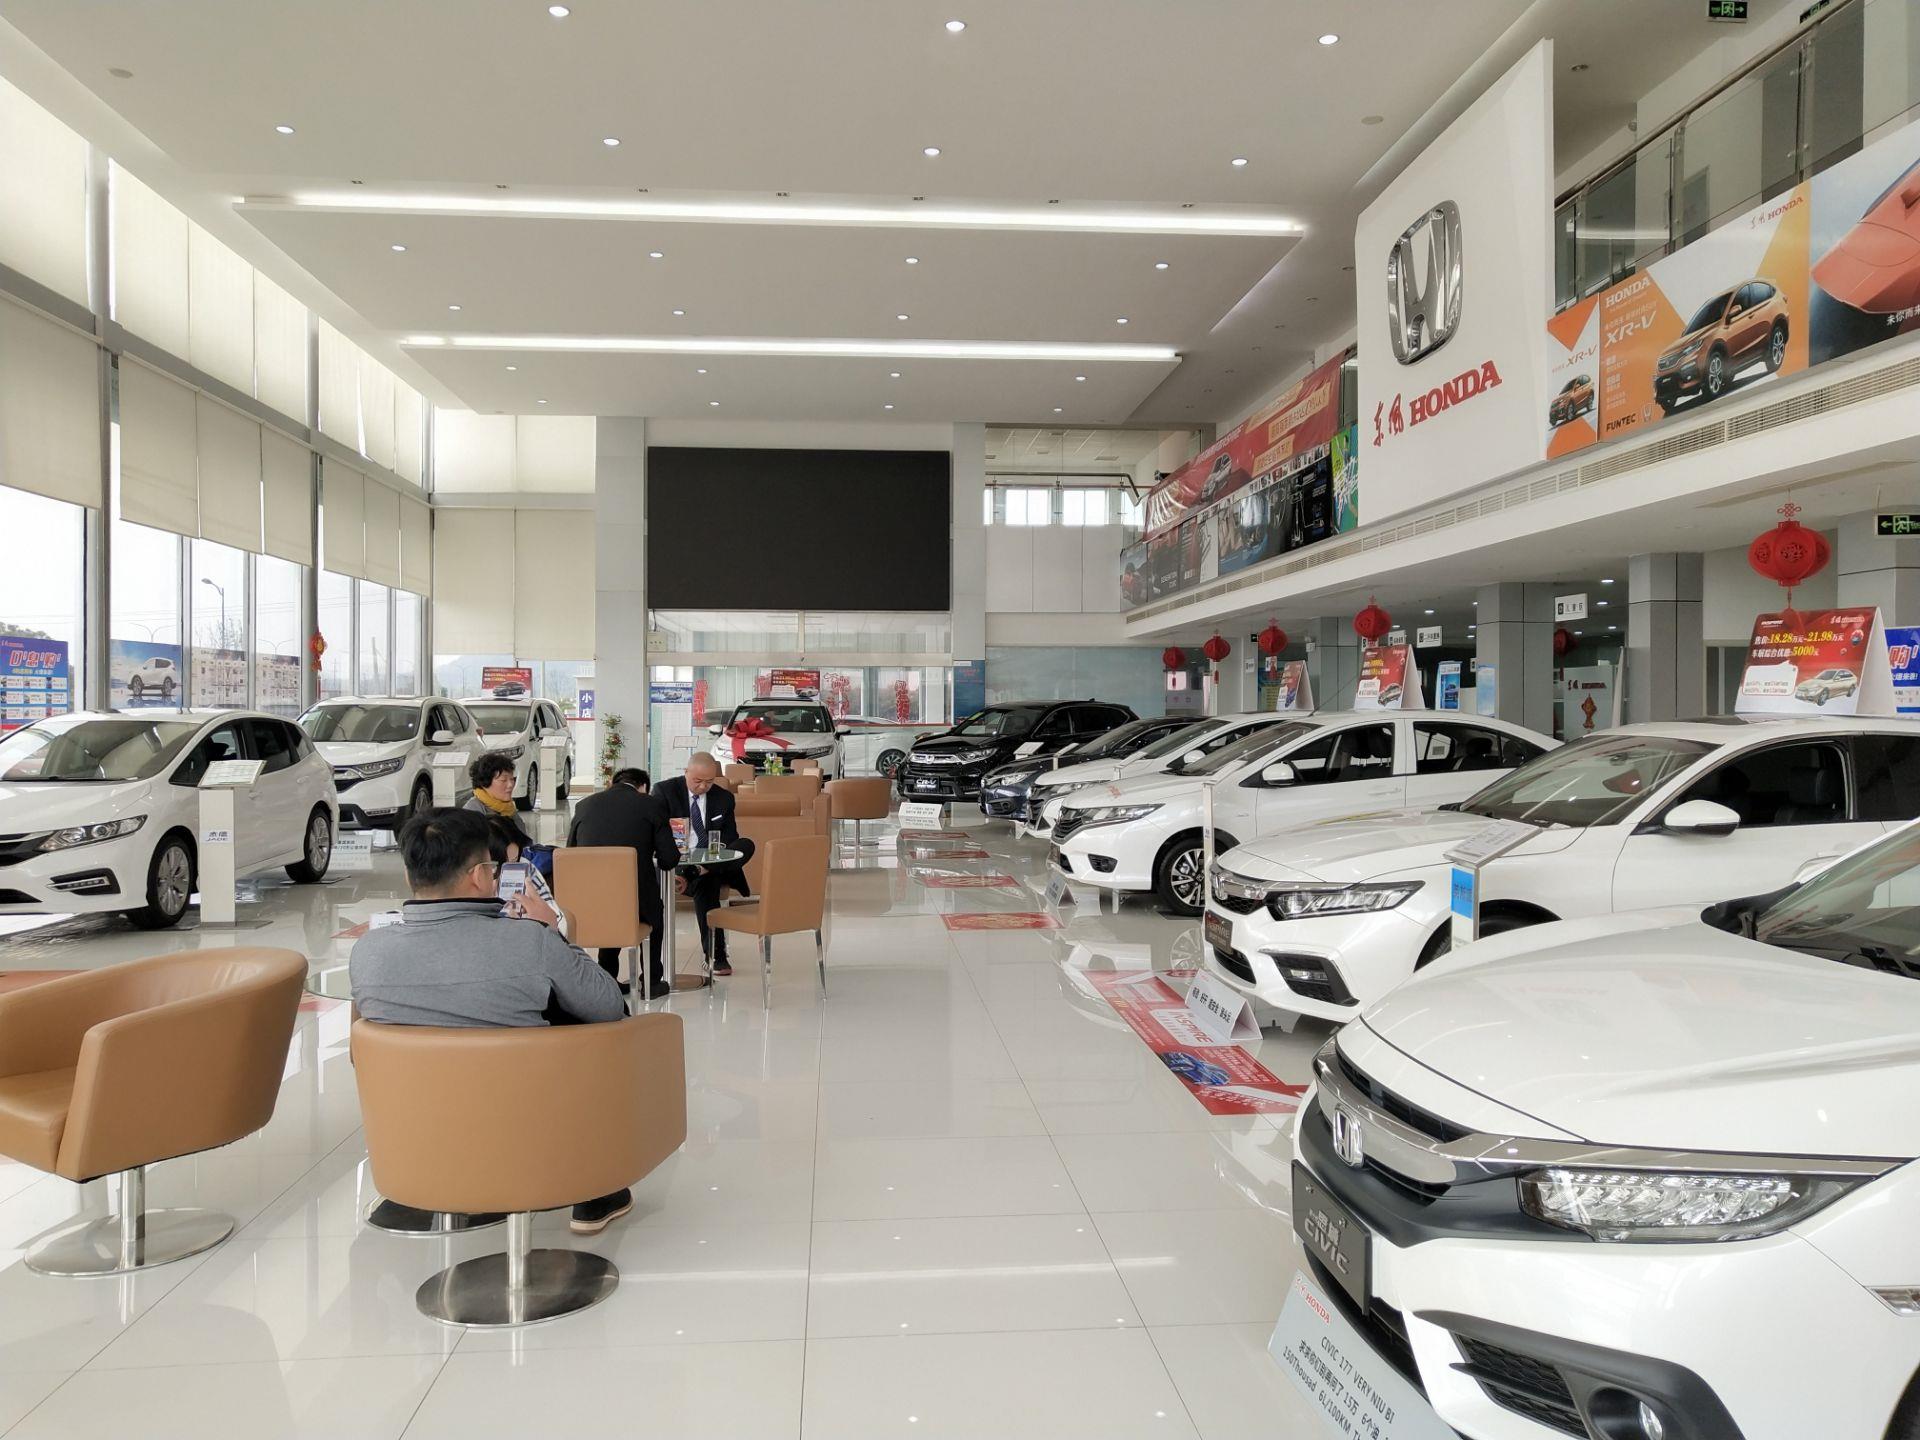 得益于北美市场强劲销售 本田汽车第三财季利润增长35%